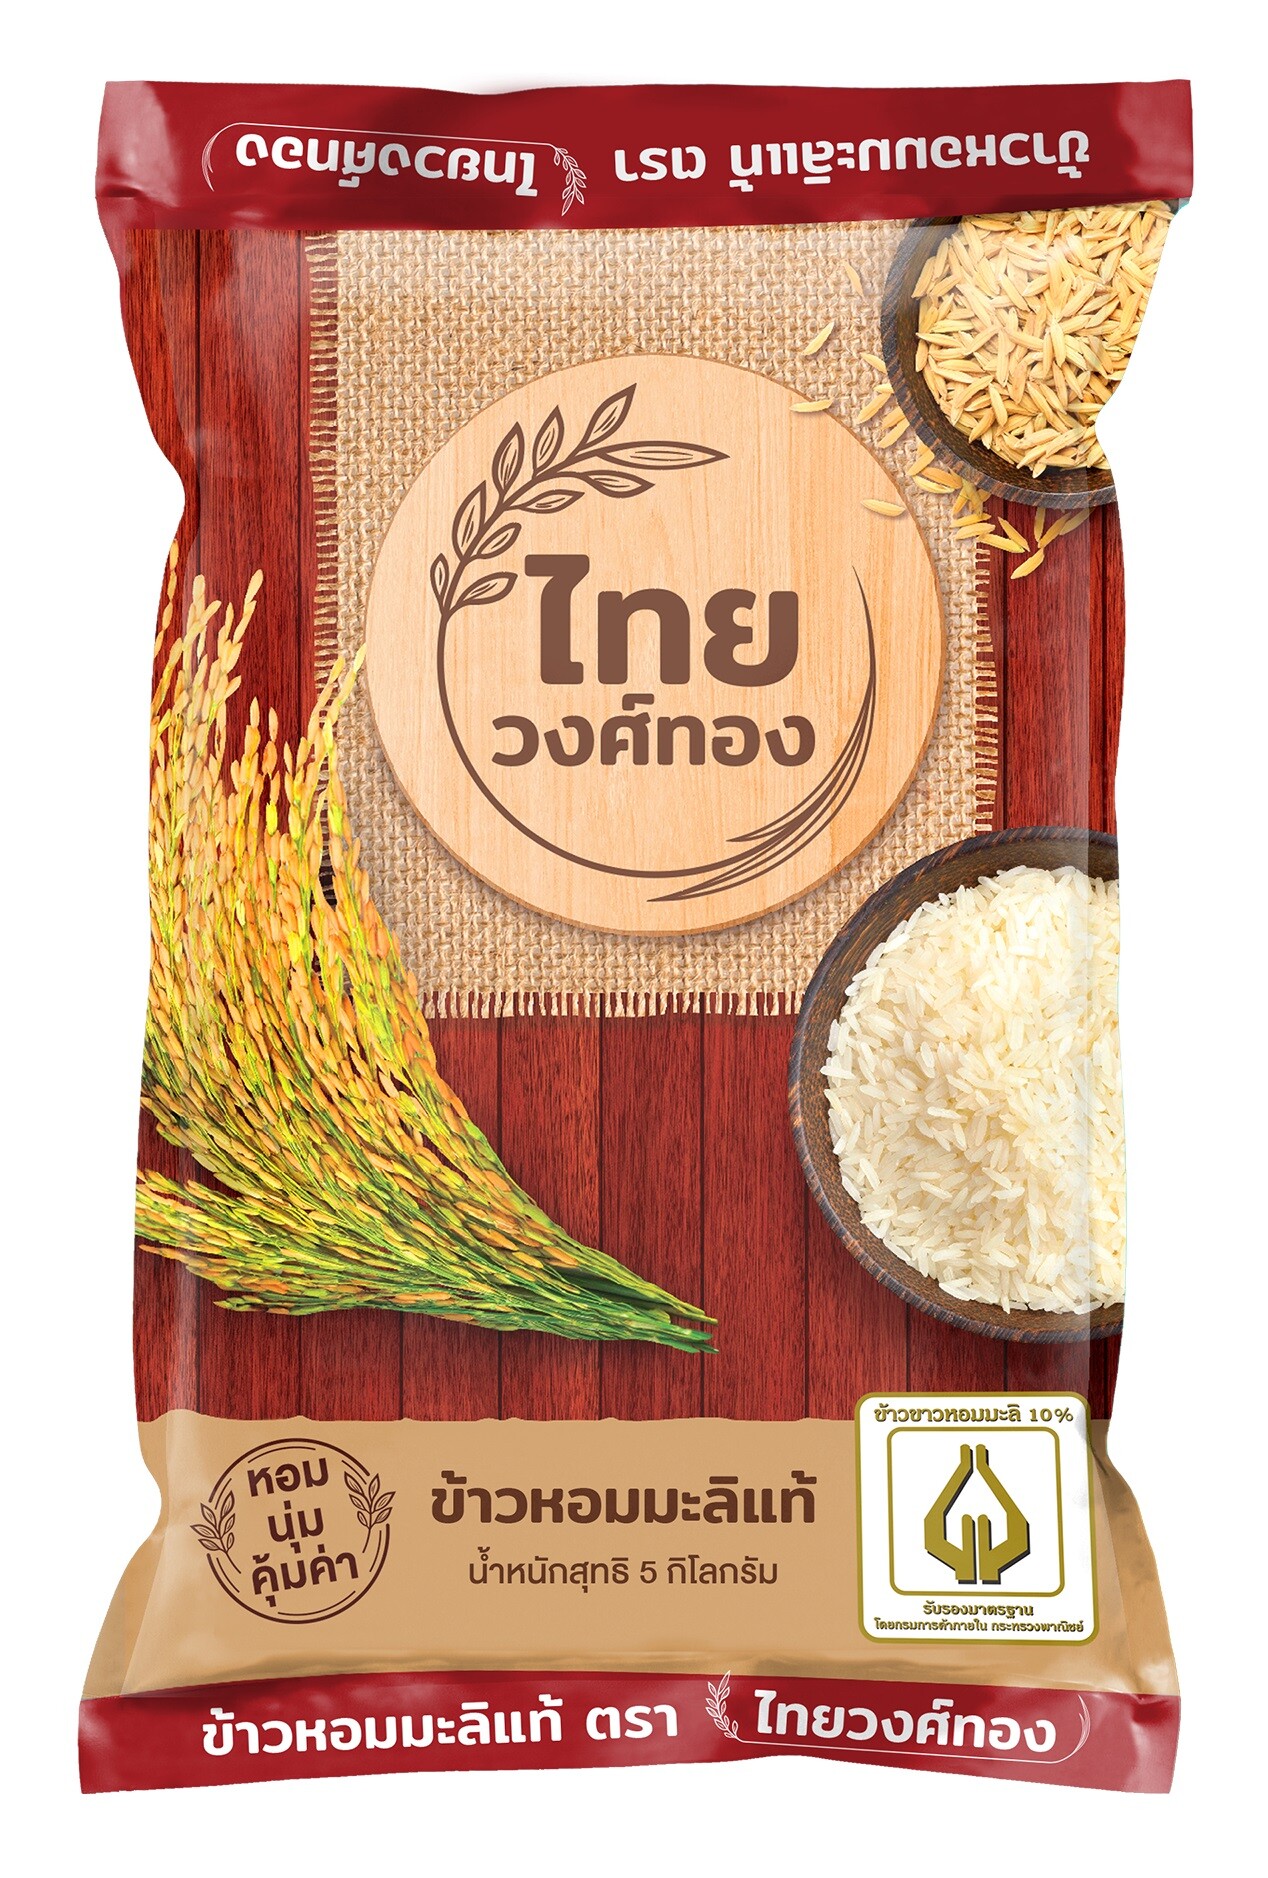 Big C ร่วมกับข้าวตราฉัตร จัดโปรโมชั่นสินค้าราคาดีเพื่อคนไทย ภายในงาน "Big C Rice Fair ข้าวถุงร่วมใจ ประหยัดทั่วไทย ที่บิ๊กซี ครั้งที่ 15"